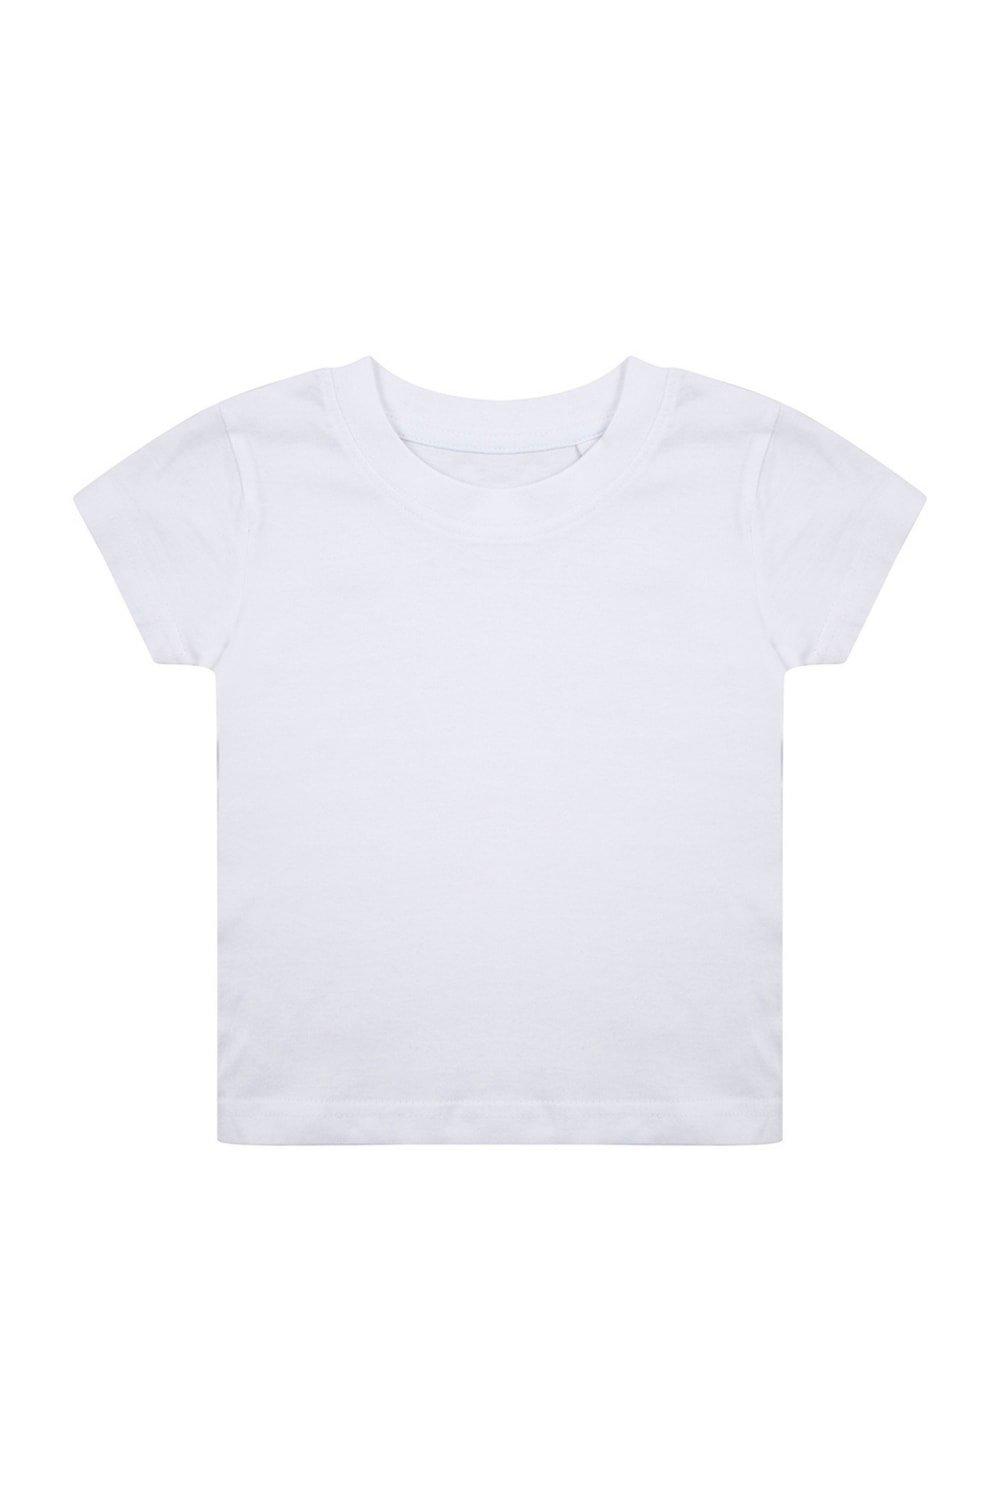 комплект одежды пижама для новорожденного 6 мес 62 68 см Органическая футболка Larkwood, белый